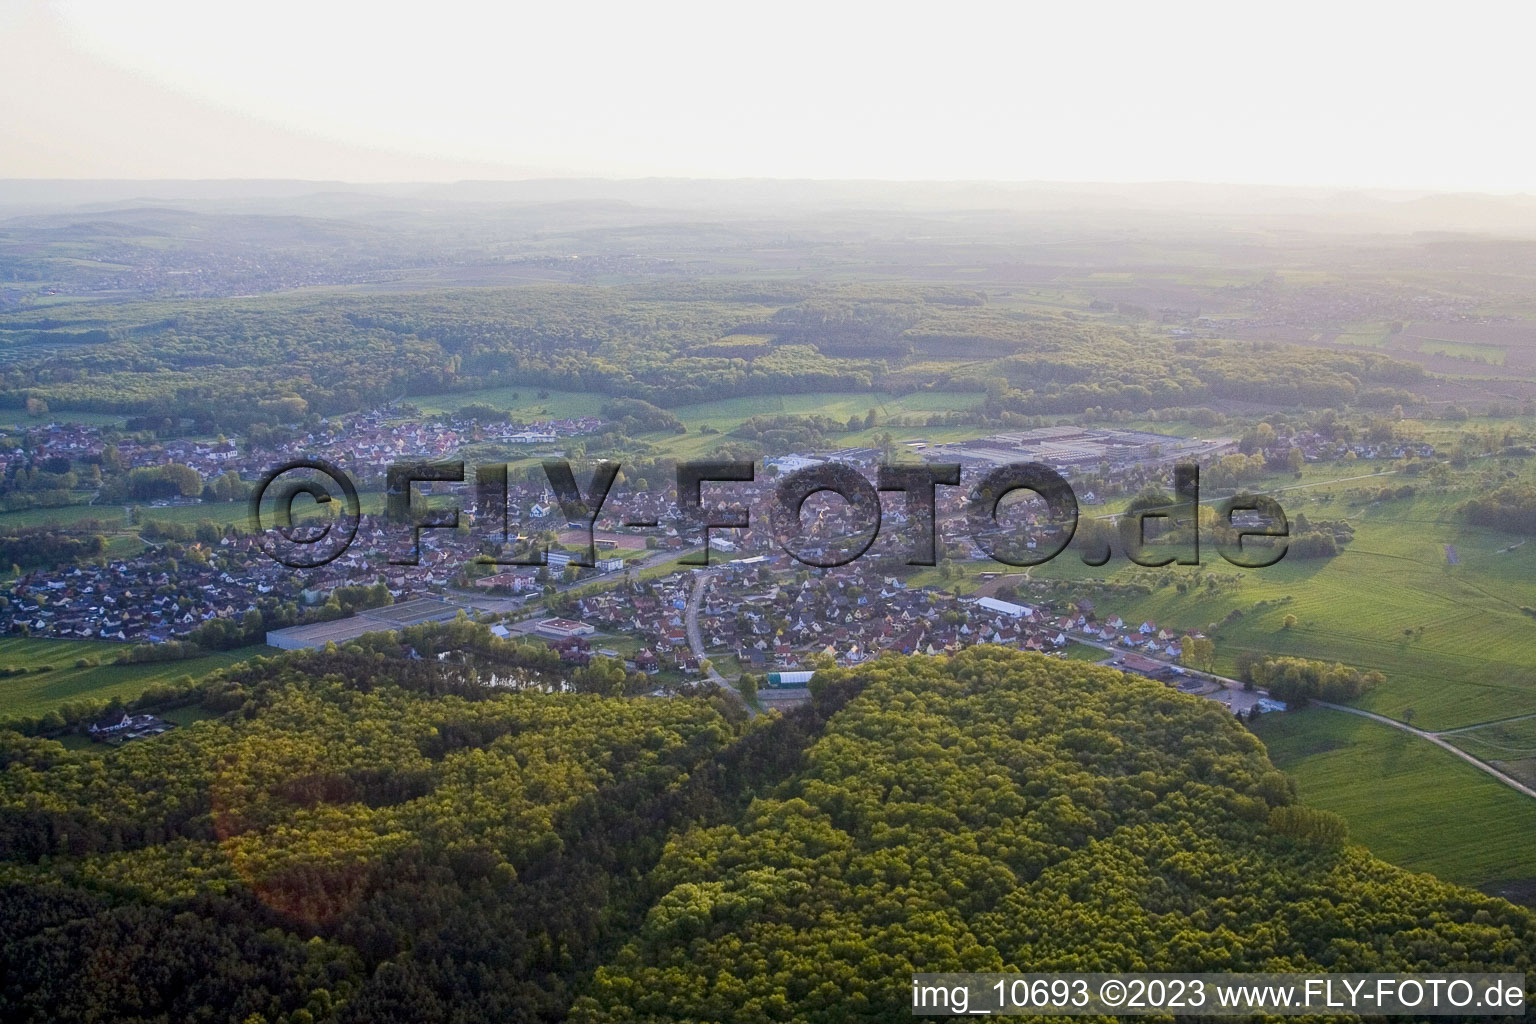 Mertzwiller dans le département Bas Rhin, France vu d'un drone